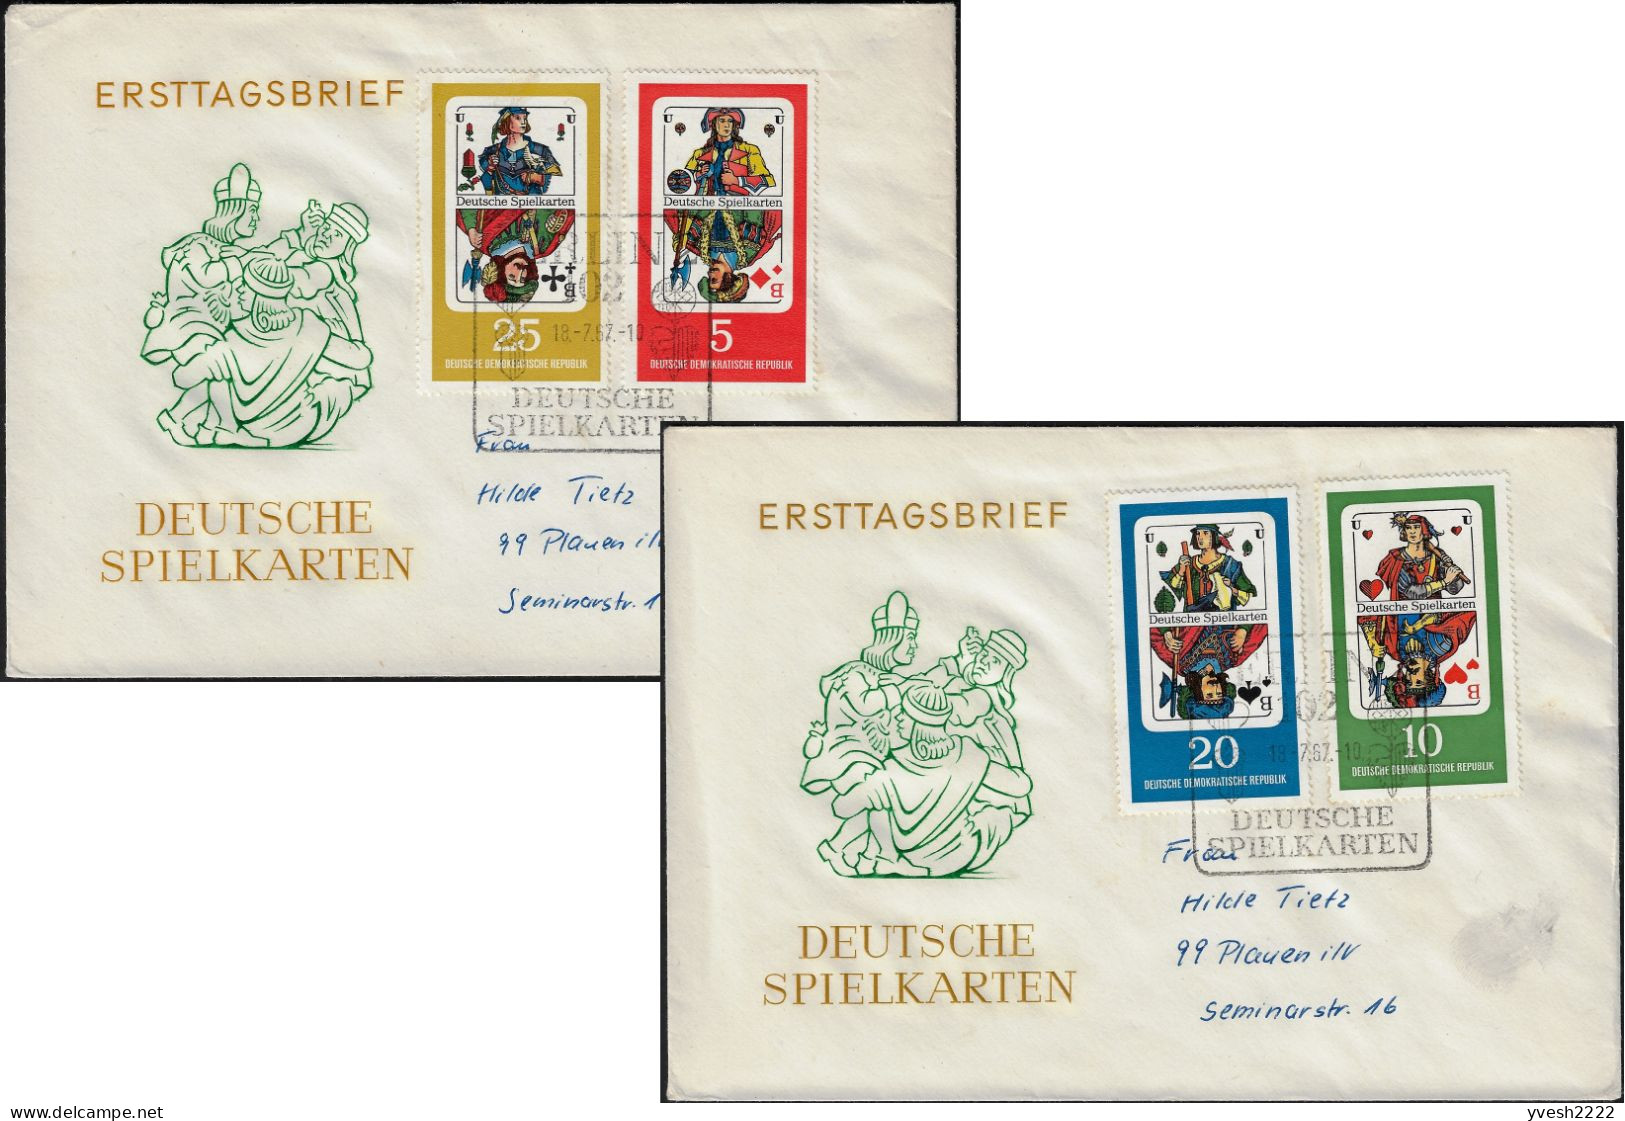 Allemagne Démocratique 1967 Y&T 995 à 998 Sur FDC. Cartes à Jouer. Valets De Carreau, De Coeur, De Pique Et De Trèfle - Sin Clasificación